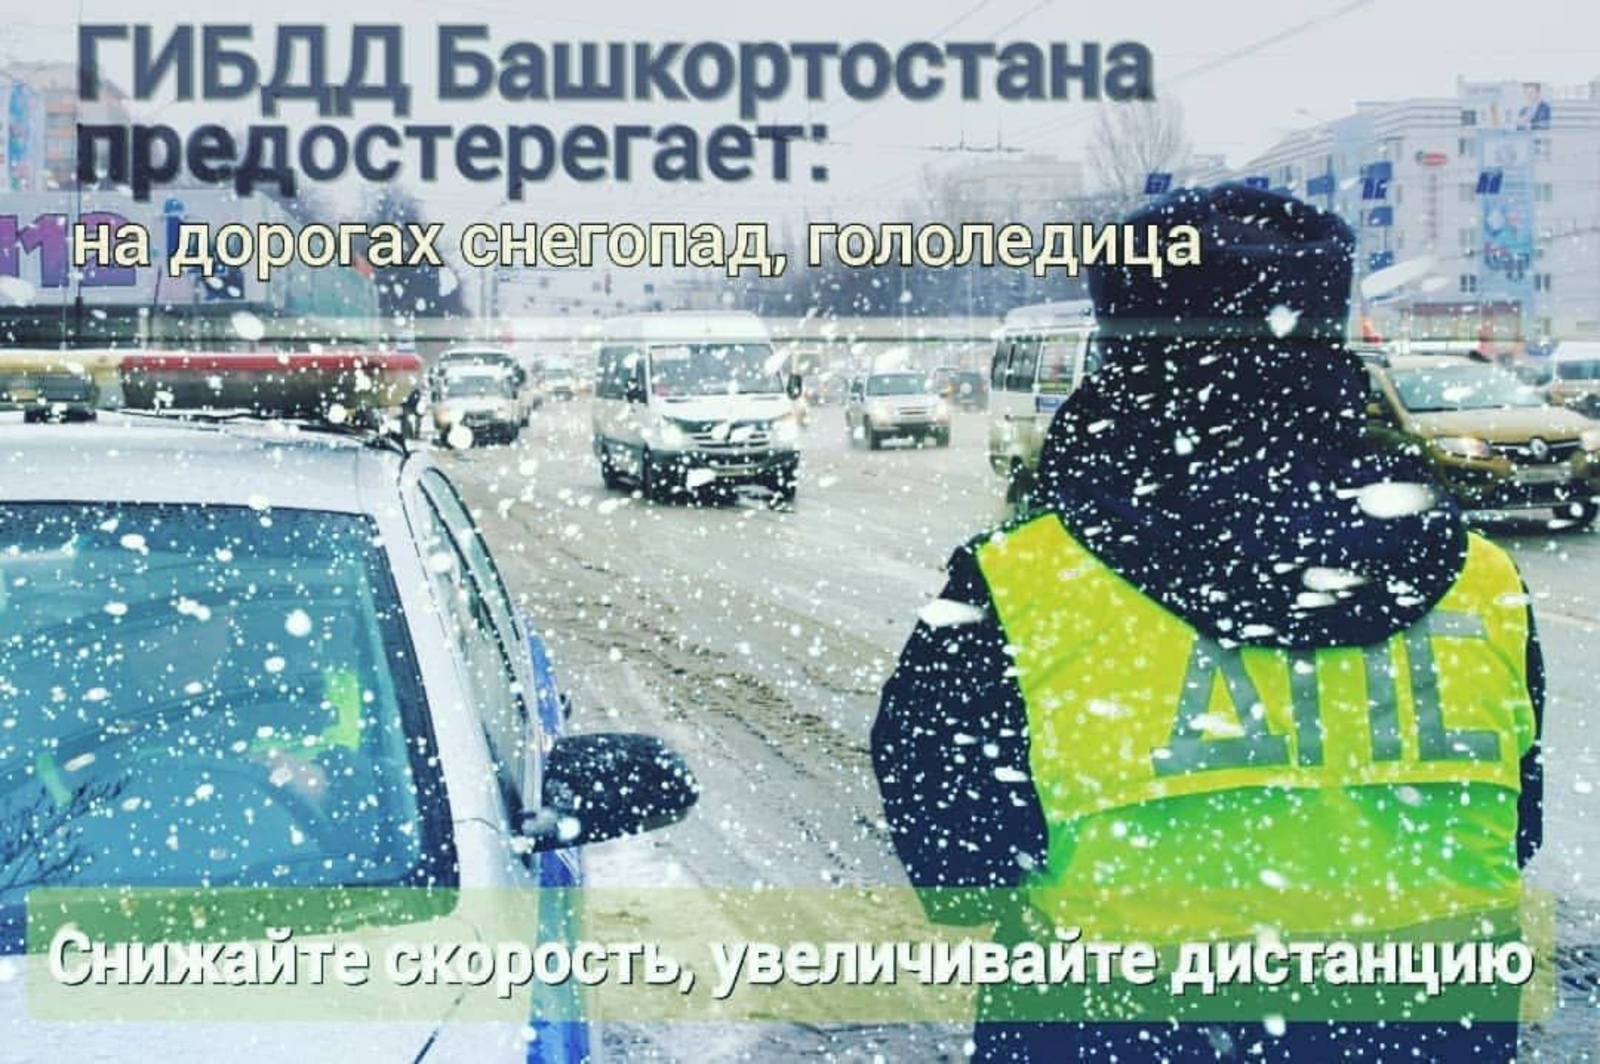 ГИБДД Башкирии предупреждает водителей о неблагоприятных погодных условиях